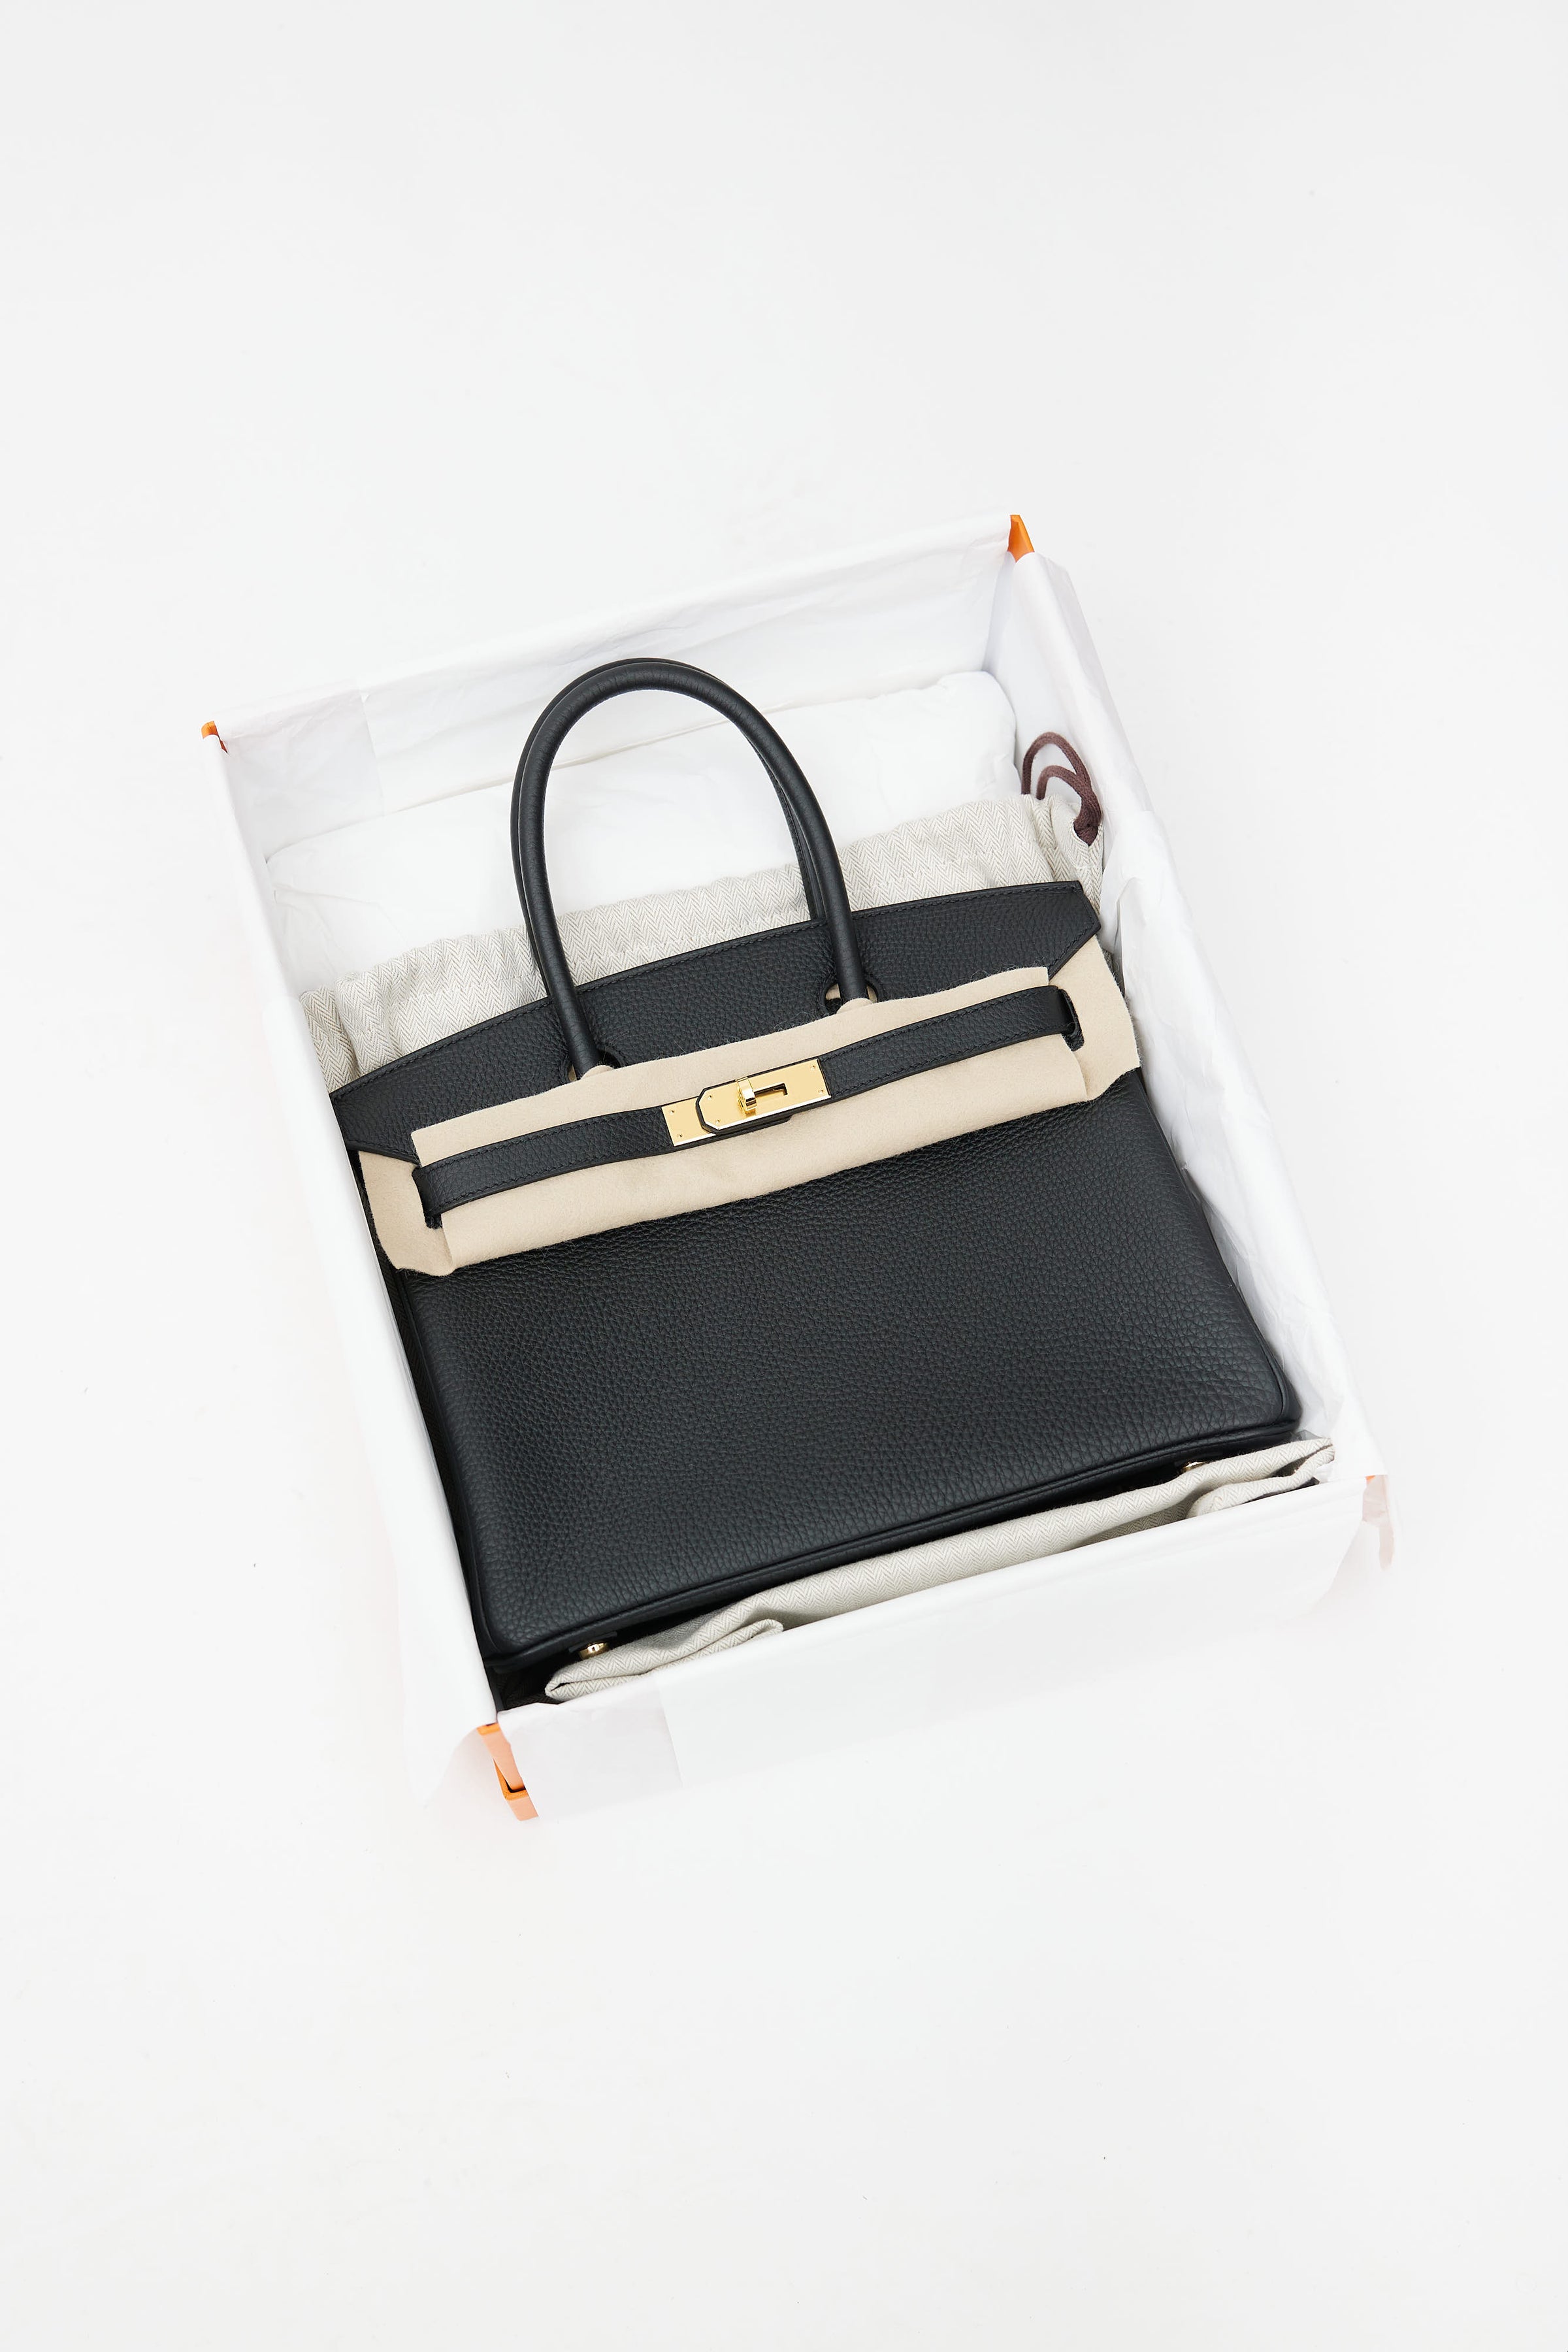 Hermès - Birkin 30 - Noir Togo - GHW - 2022 Unused